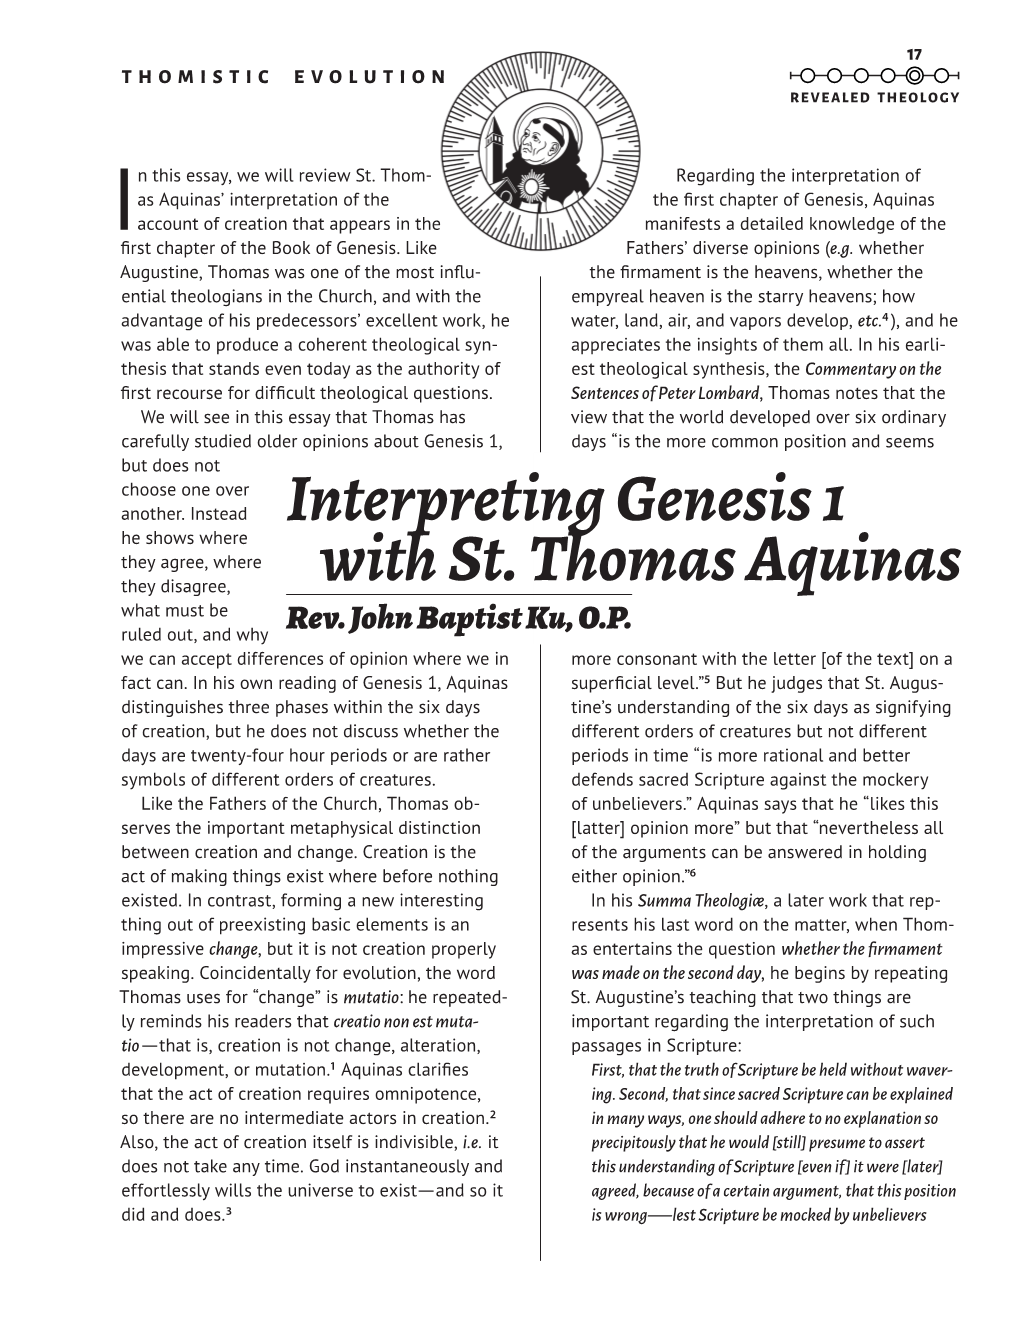 Interpreting Genesis 1 with St. Thomas Aquinas